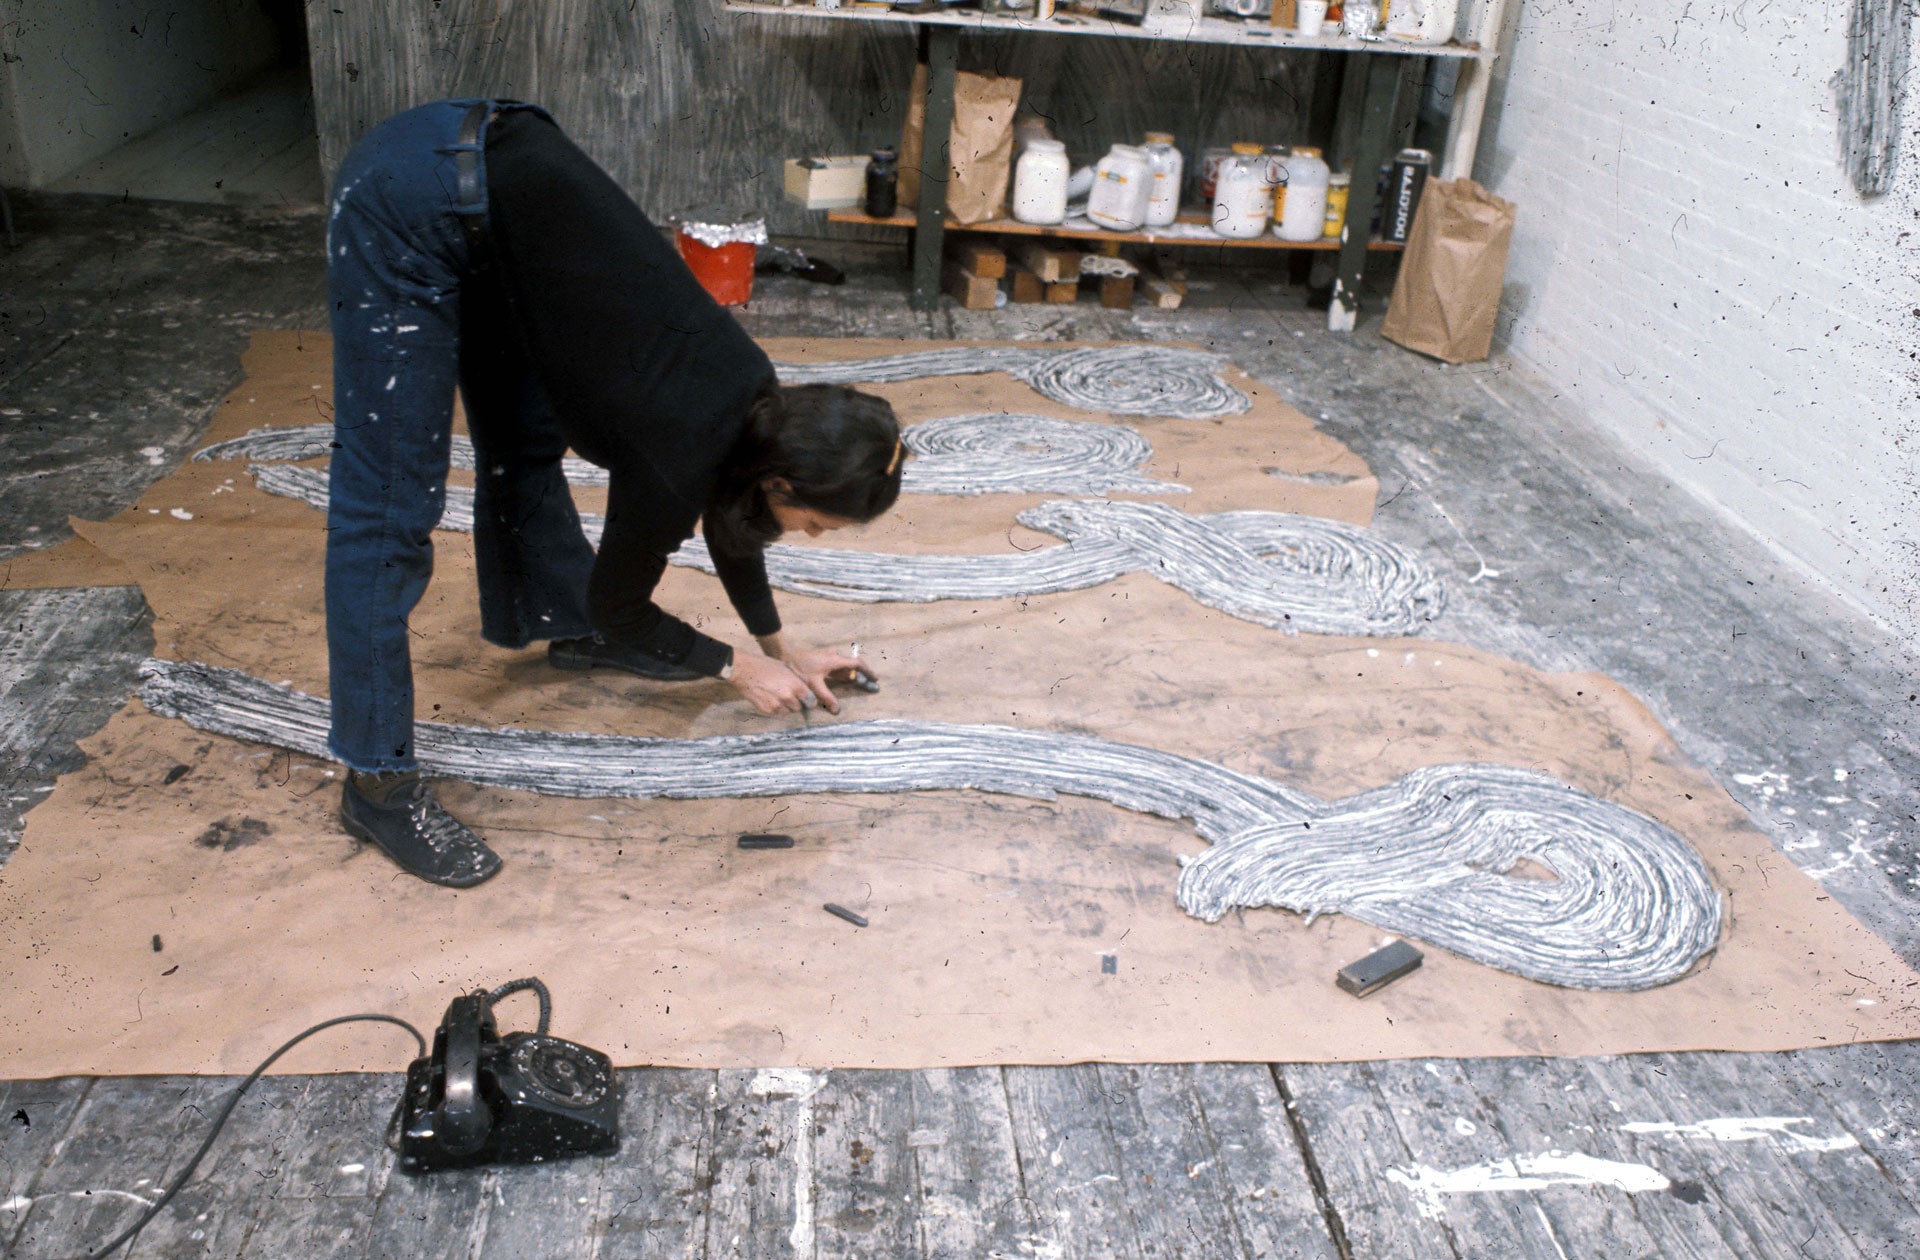 Ein Frau beugt sich vornüber um ein skulpturales Kunstwerk am Boden weiterzubearbeiten. In einer Hand hält sie eine Zigarette.